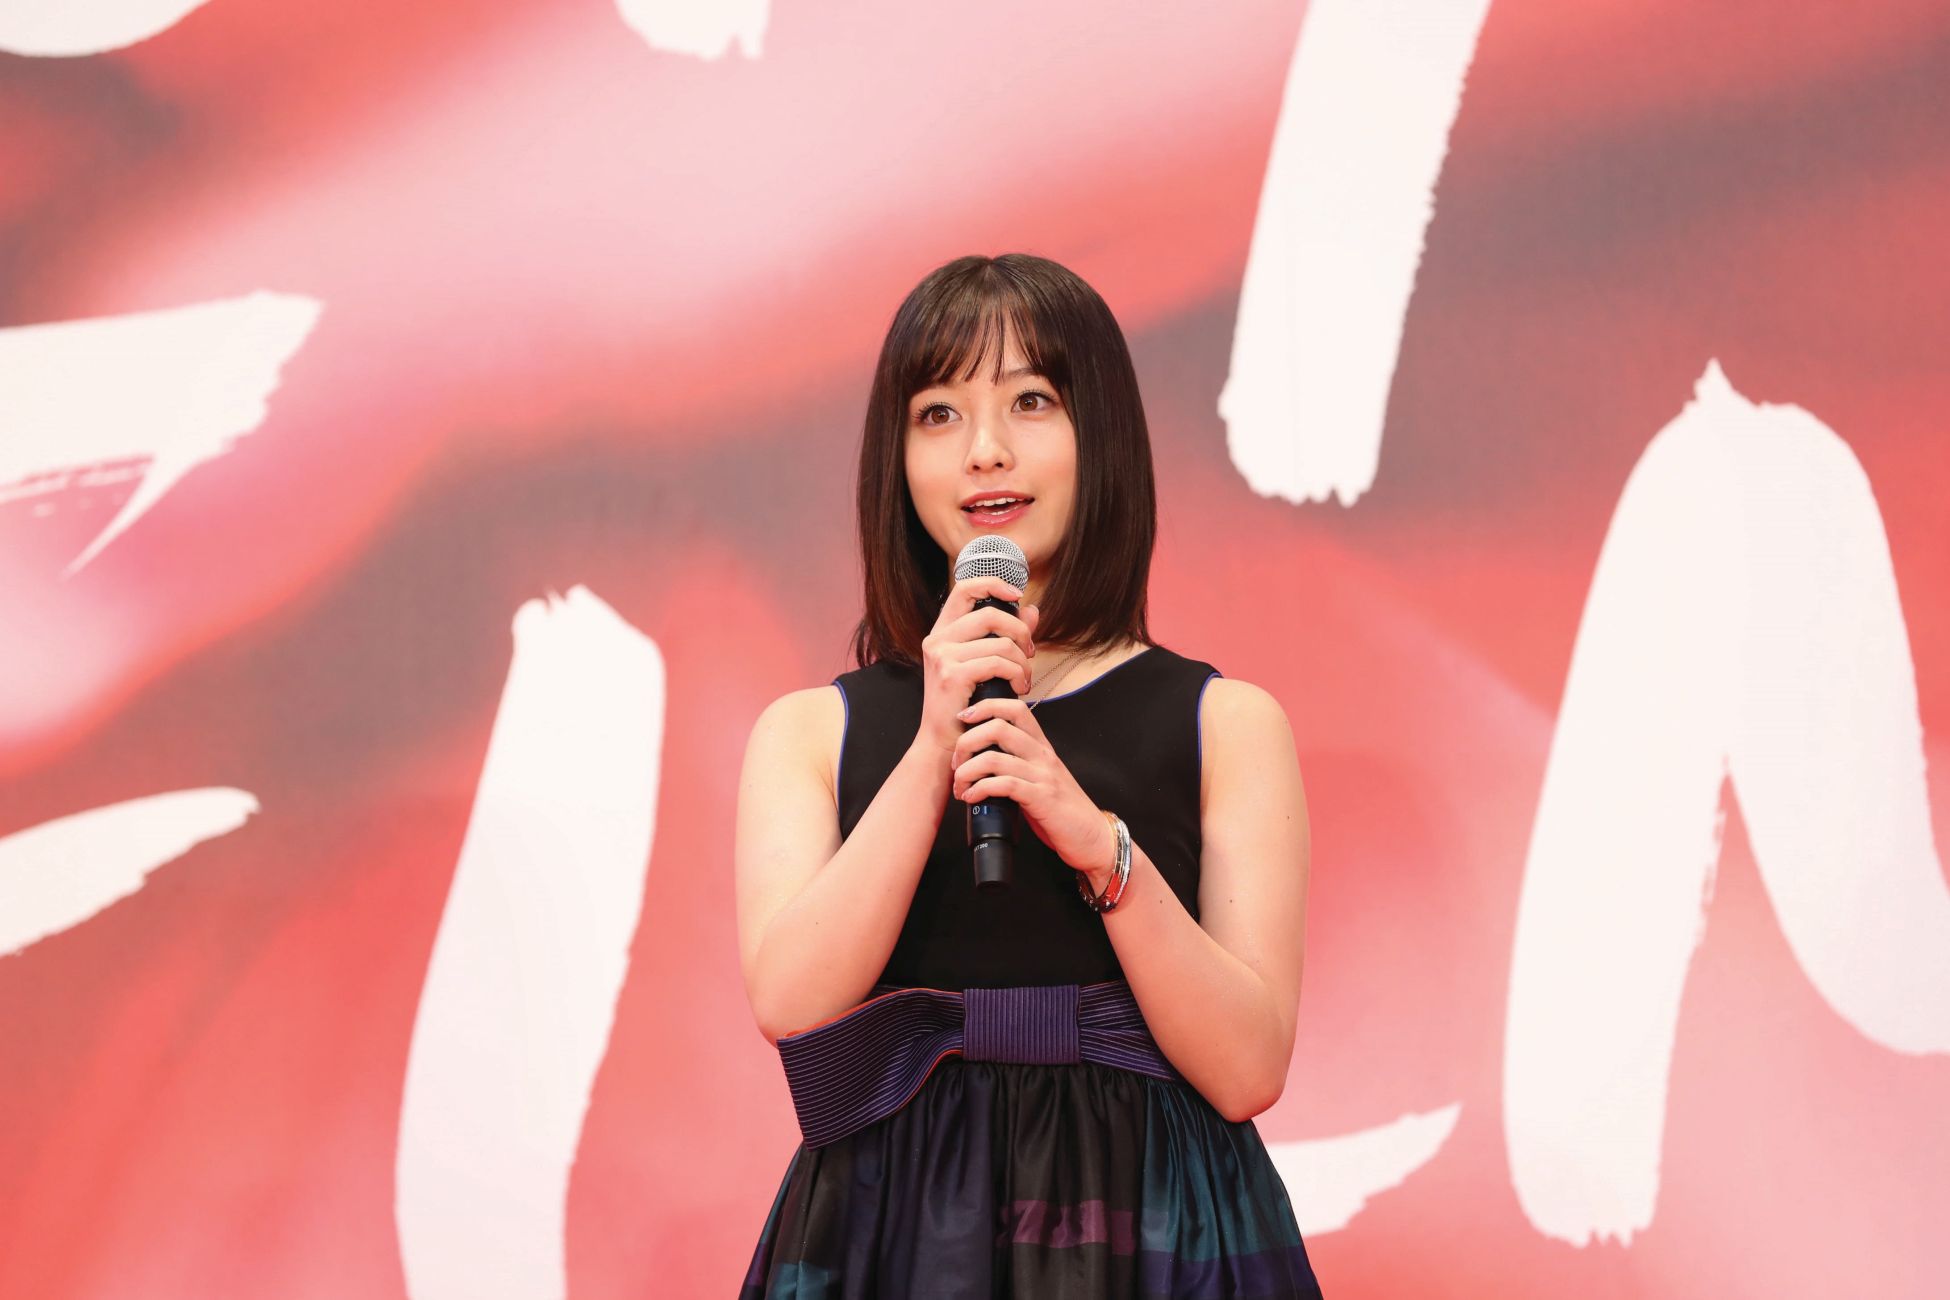 Kanna Hashimoto (c)2017 TIFF